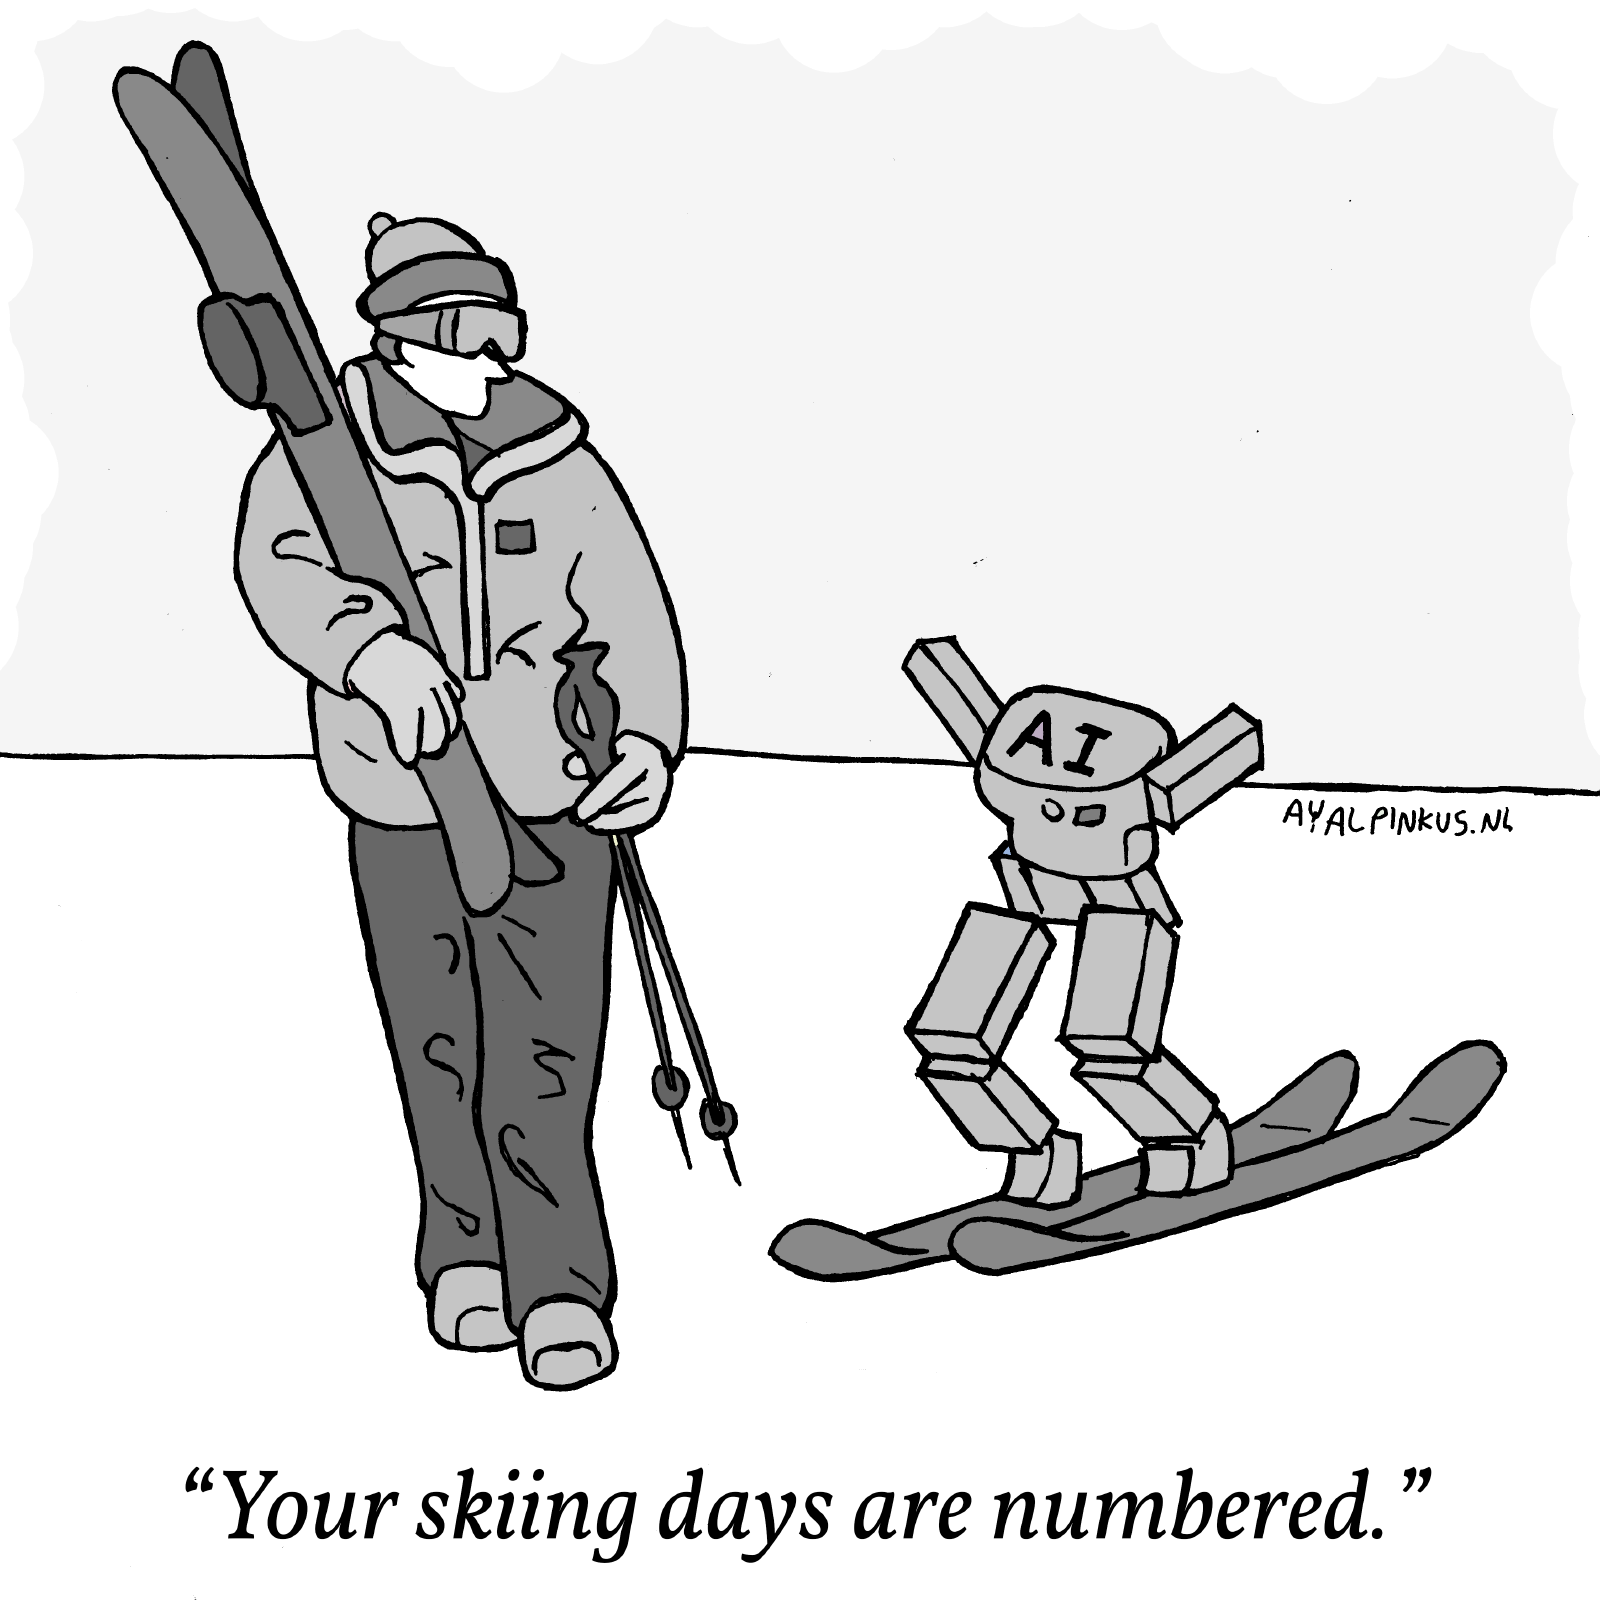 Ski-bot